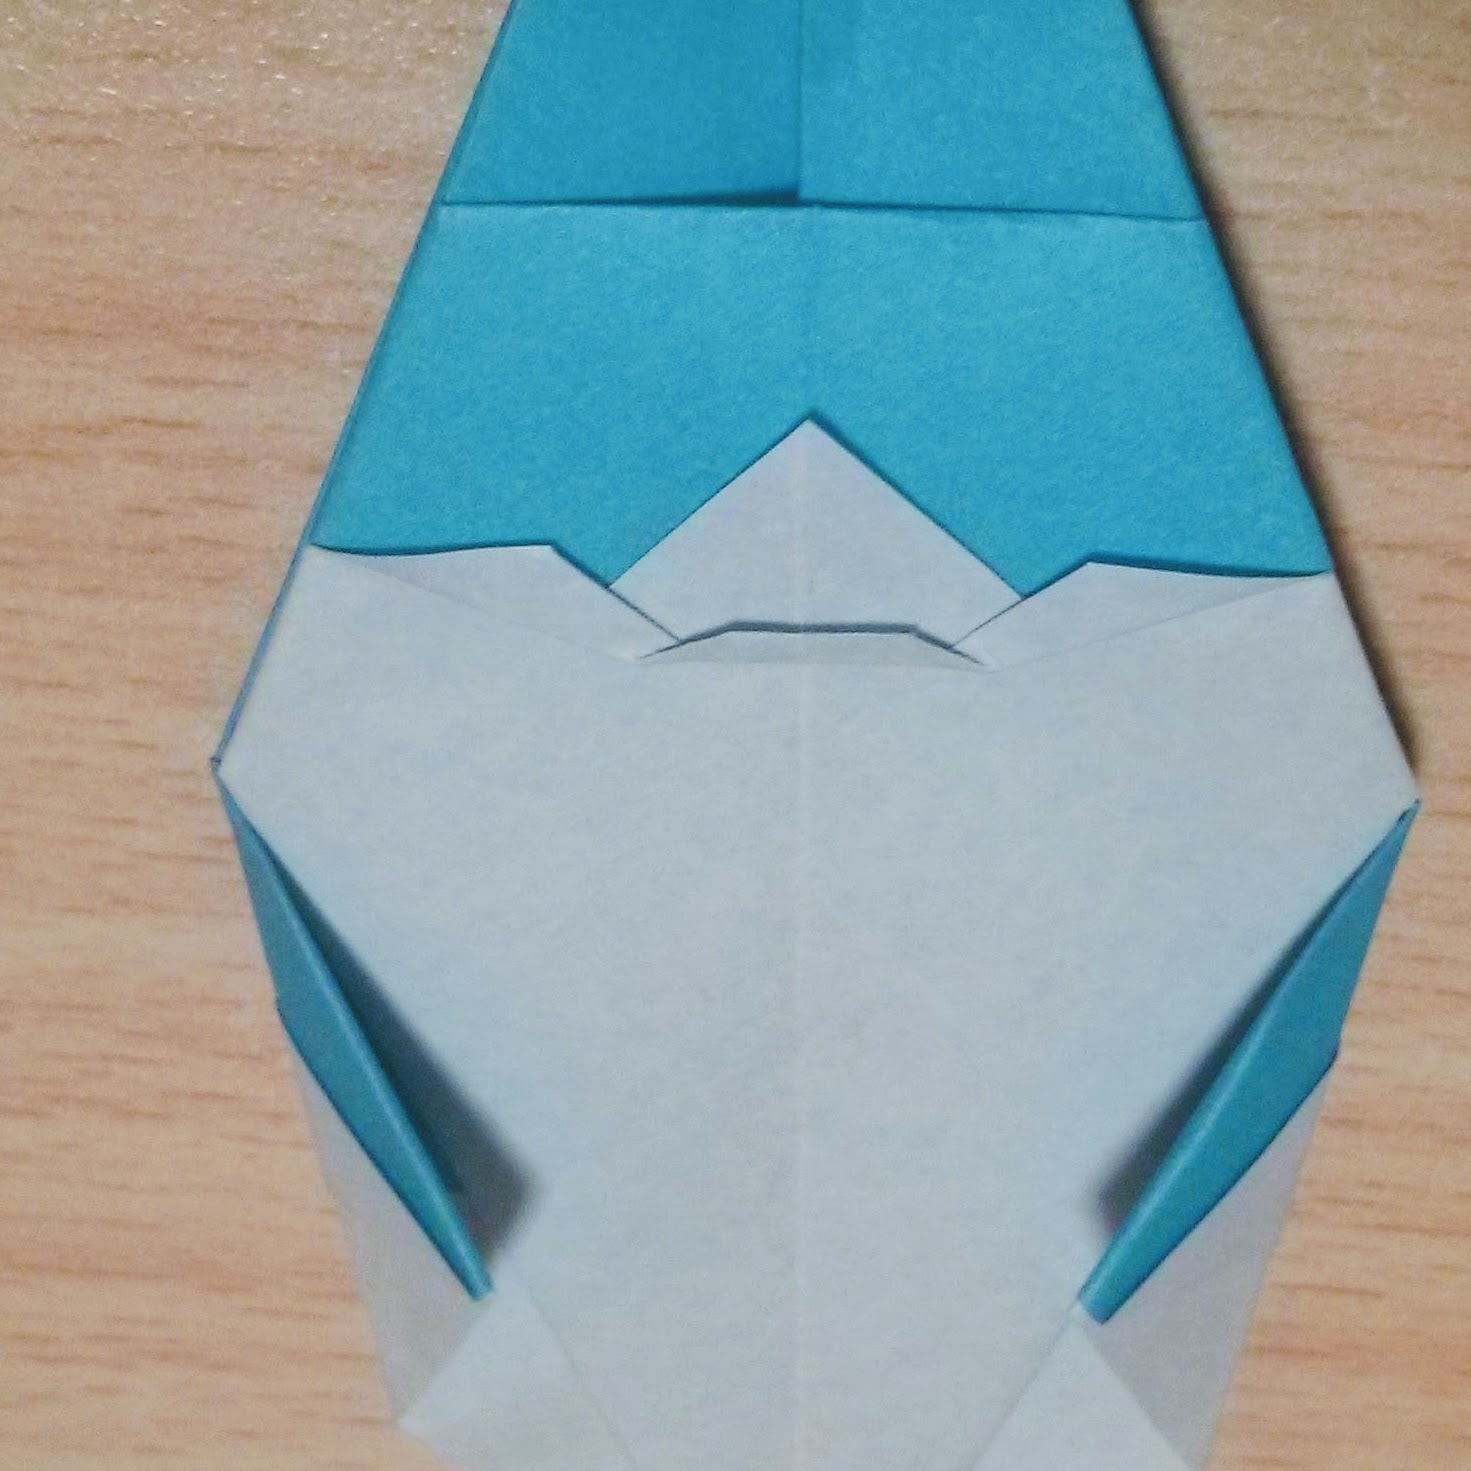 ジブリキャラクター トロロ の折り紙での折り方 平面 立体の作り方まとめ 暮らし の